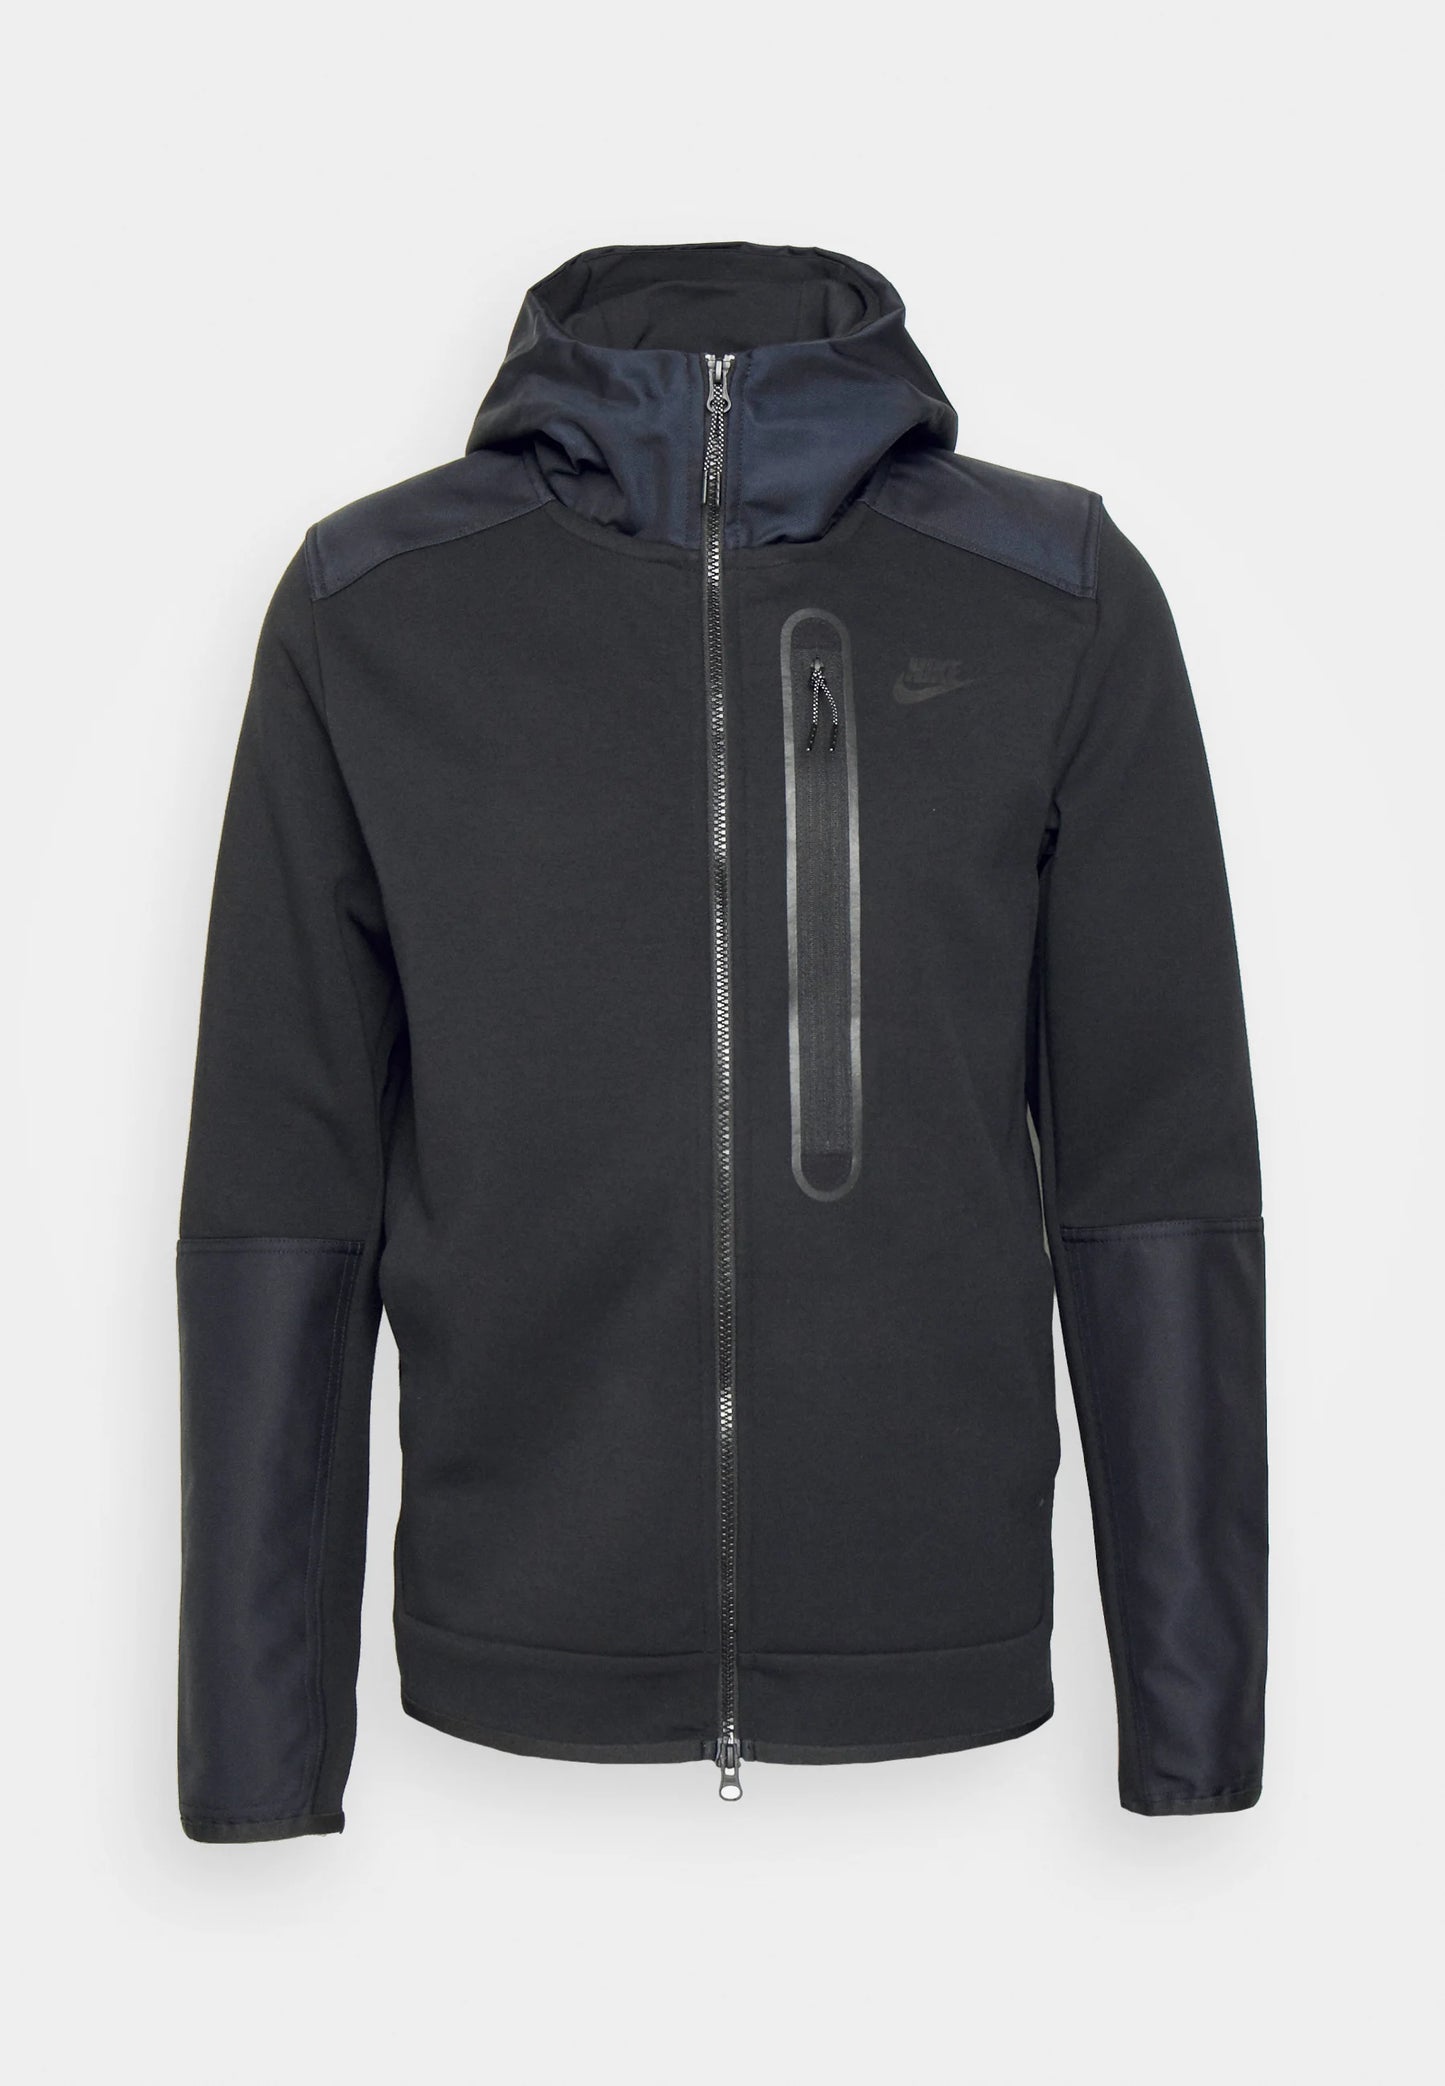 Nike Tech Fleece Overlay Jacket